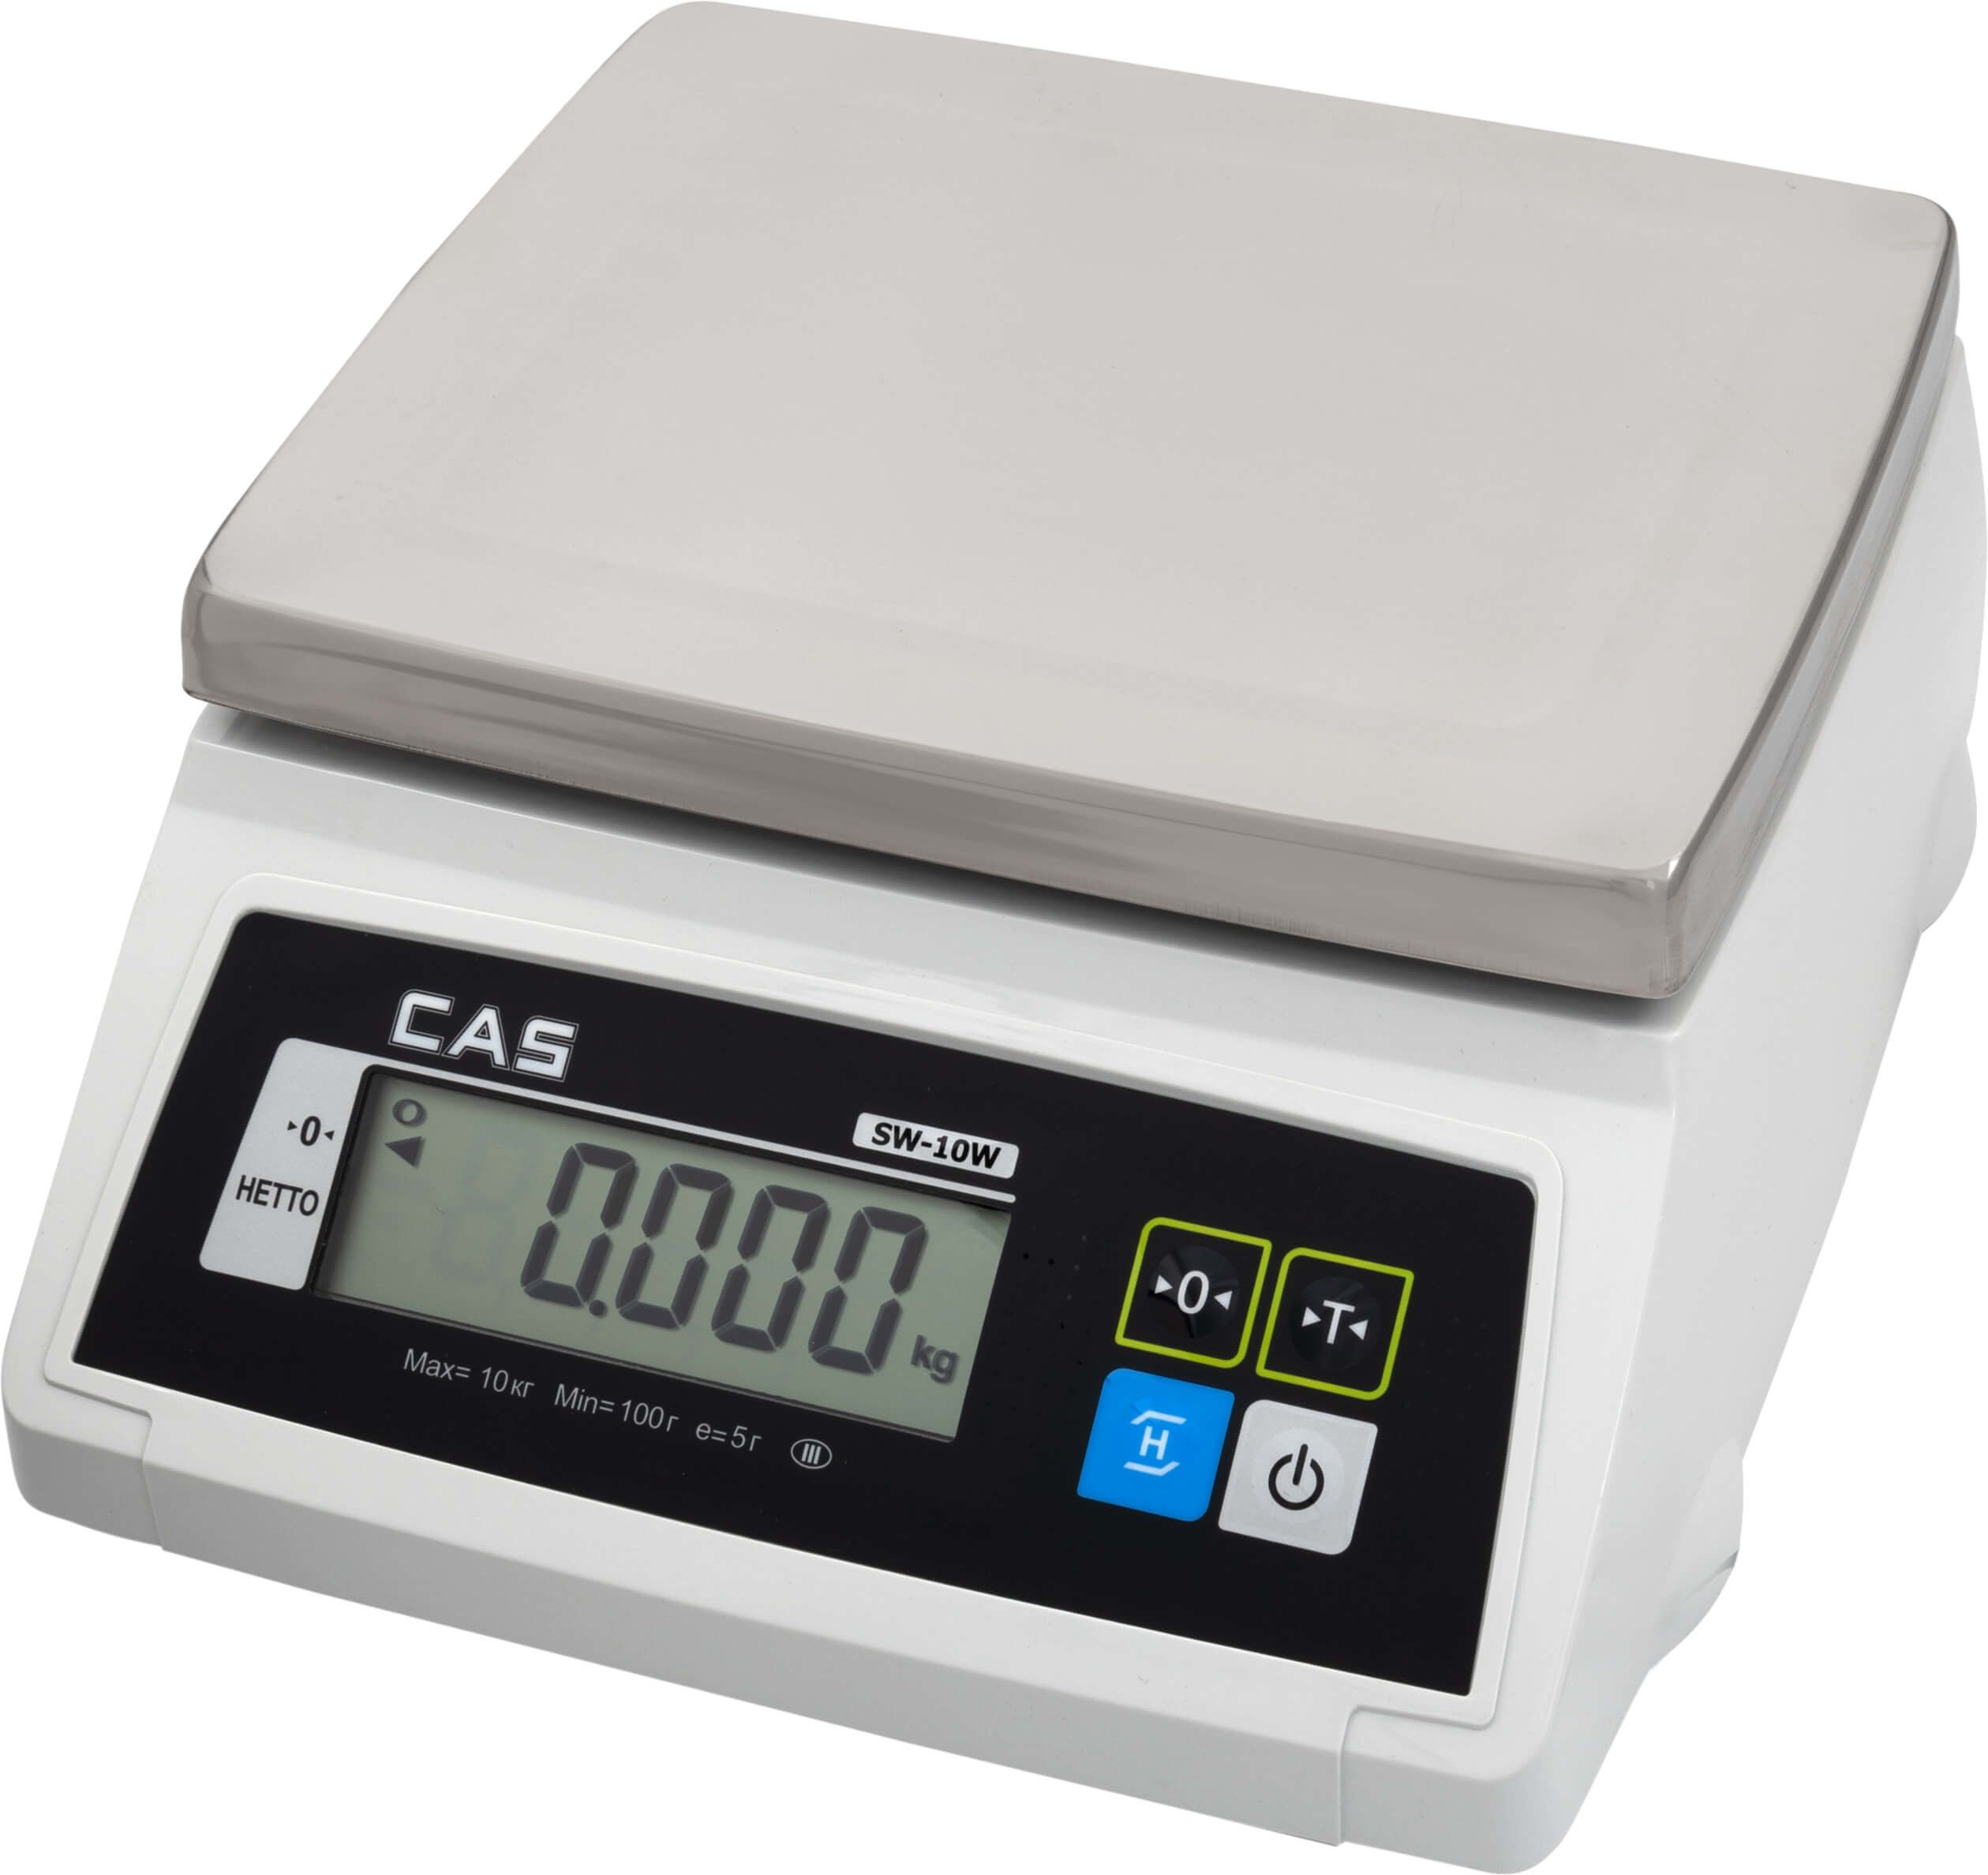 Купить хорошие электронные весы. Весы порционные CAS SW-5 W. Настольные весы CAS SW-20wdd. Весы CAS SW-5 1a0sw4502gci0501. Весы порционные CAS SW-20w DD.